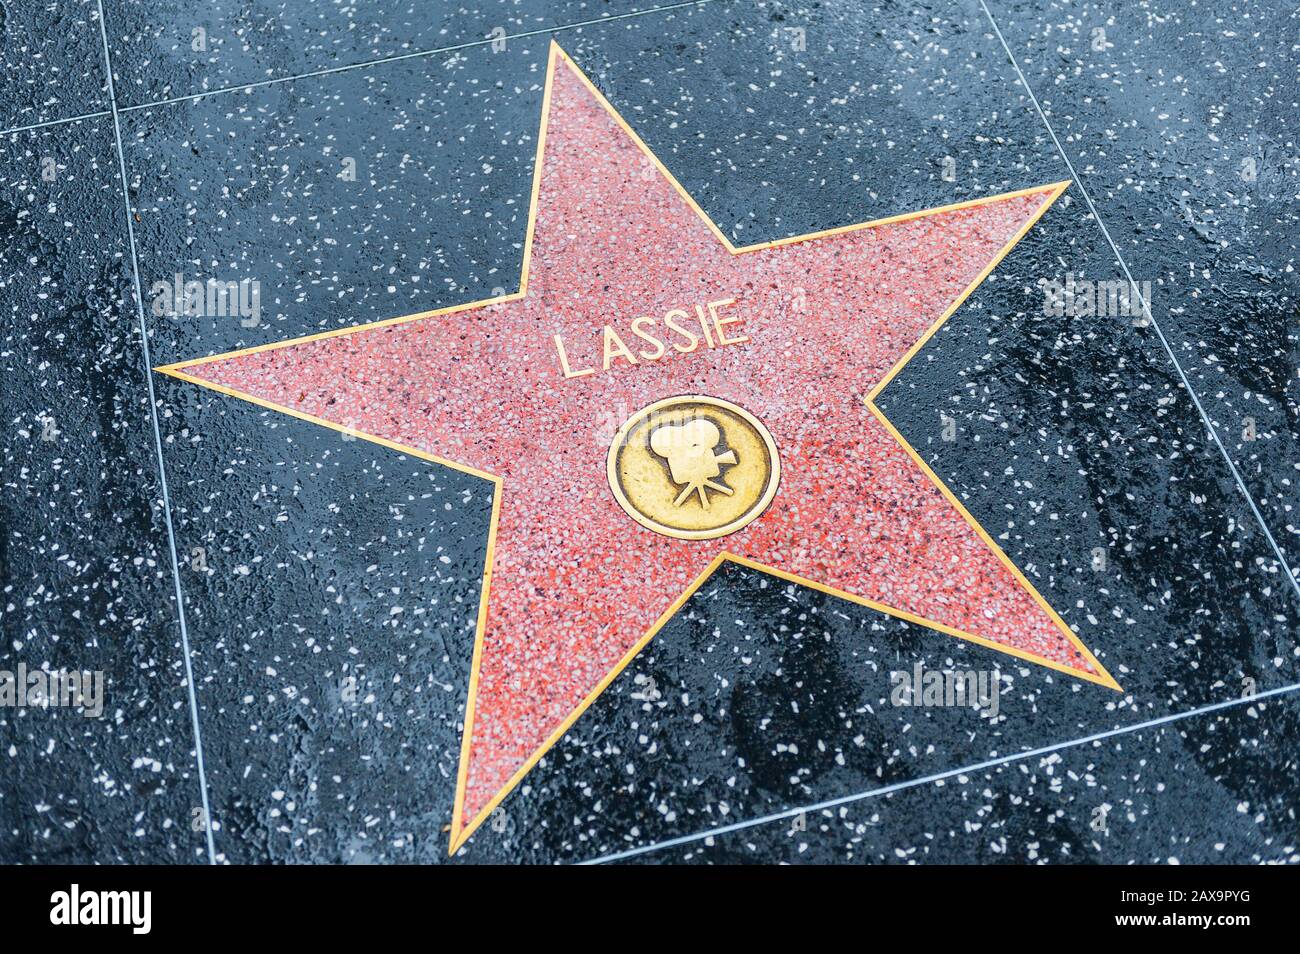 Étoile de Lassie sur le Hollywood Walk of Fame à Hollywood, Californie, États-Unis. Lassie était un chien fictif de collie rugueux. Banque D'Images